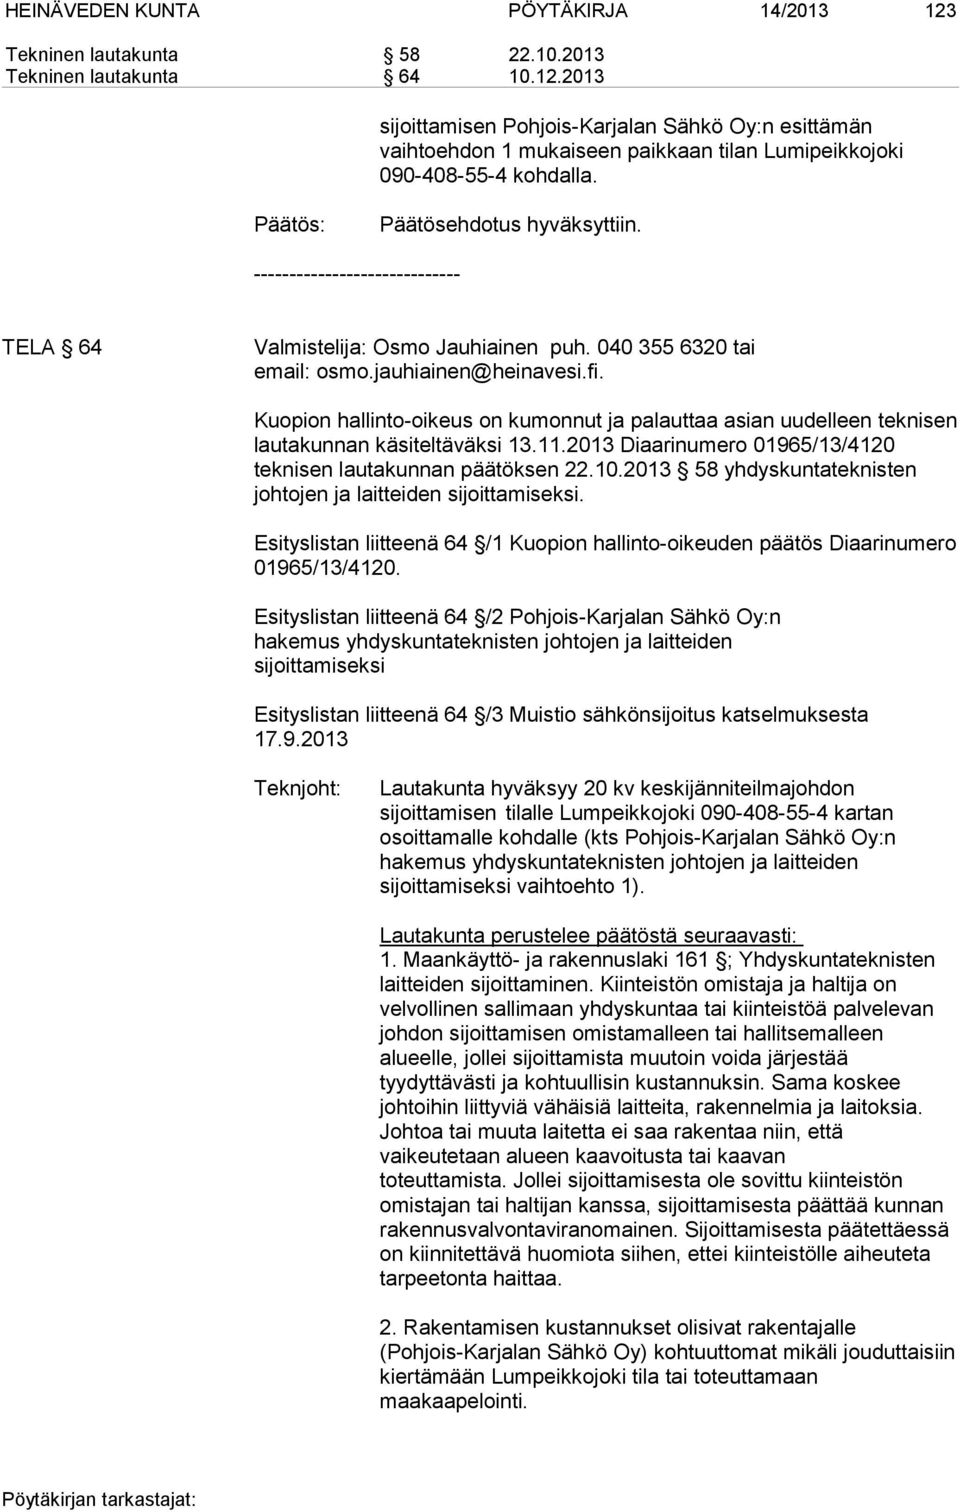 Kuopion hallinto-oikeus on kumonnut ja palauttaa asian uudelleen teknisen lautakunnan käsiteltäväksi 13.11.2013 Diaarinumero 01965/13/4120 teknisen lautakunnan päätöksen 22.10.